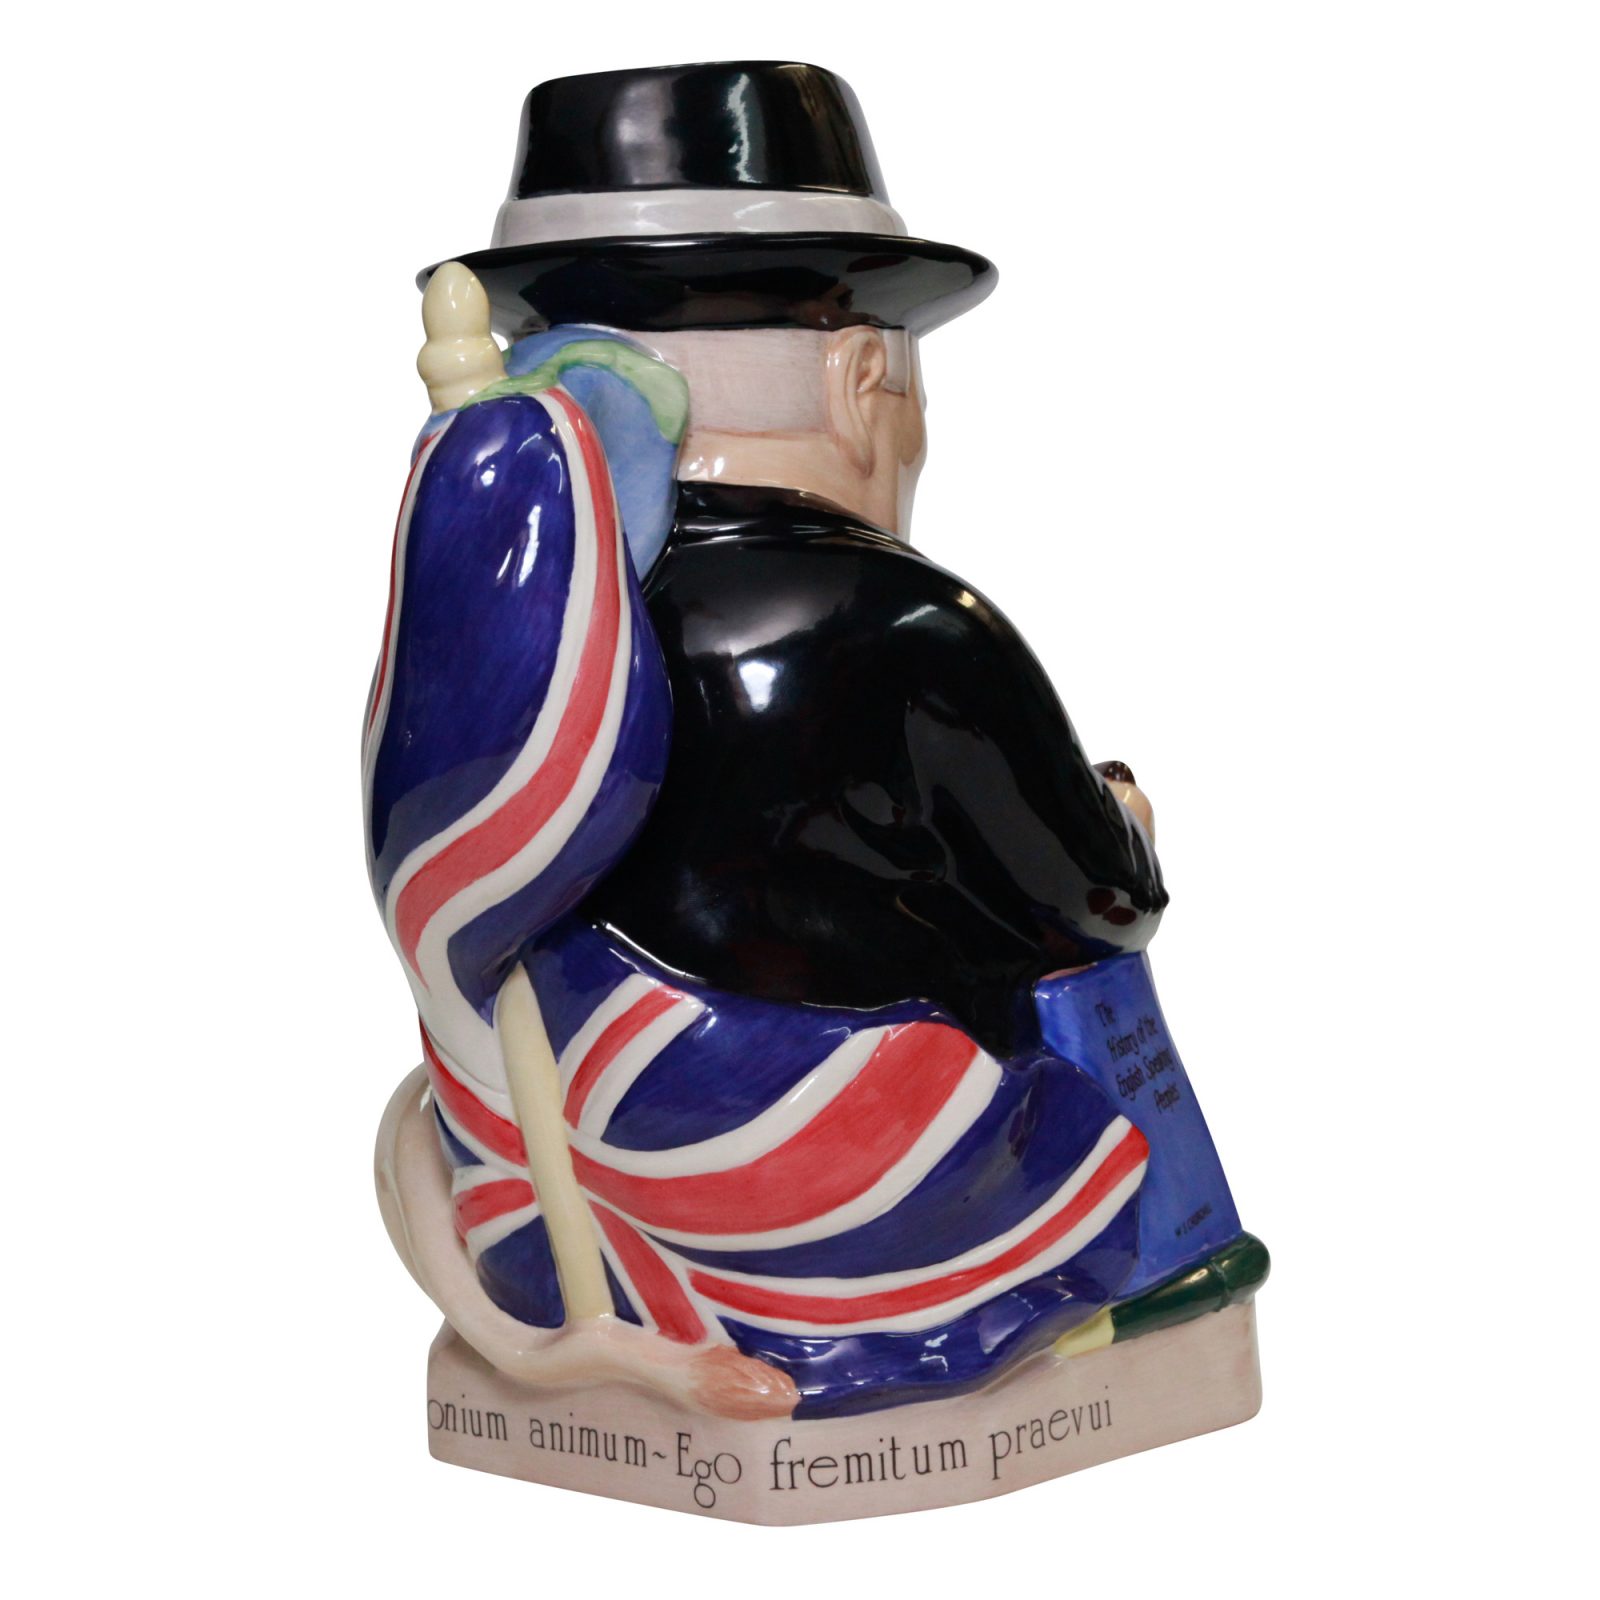 Kevin Francis Winston Churchill Spirit of Britain Toby jug